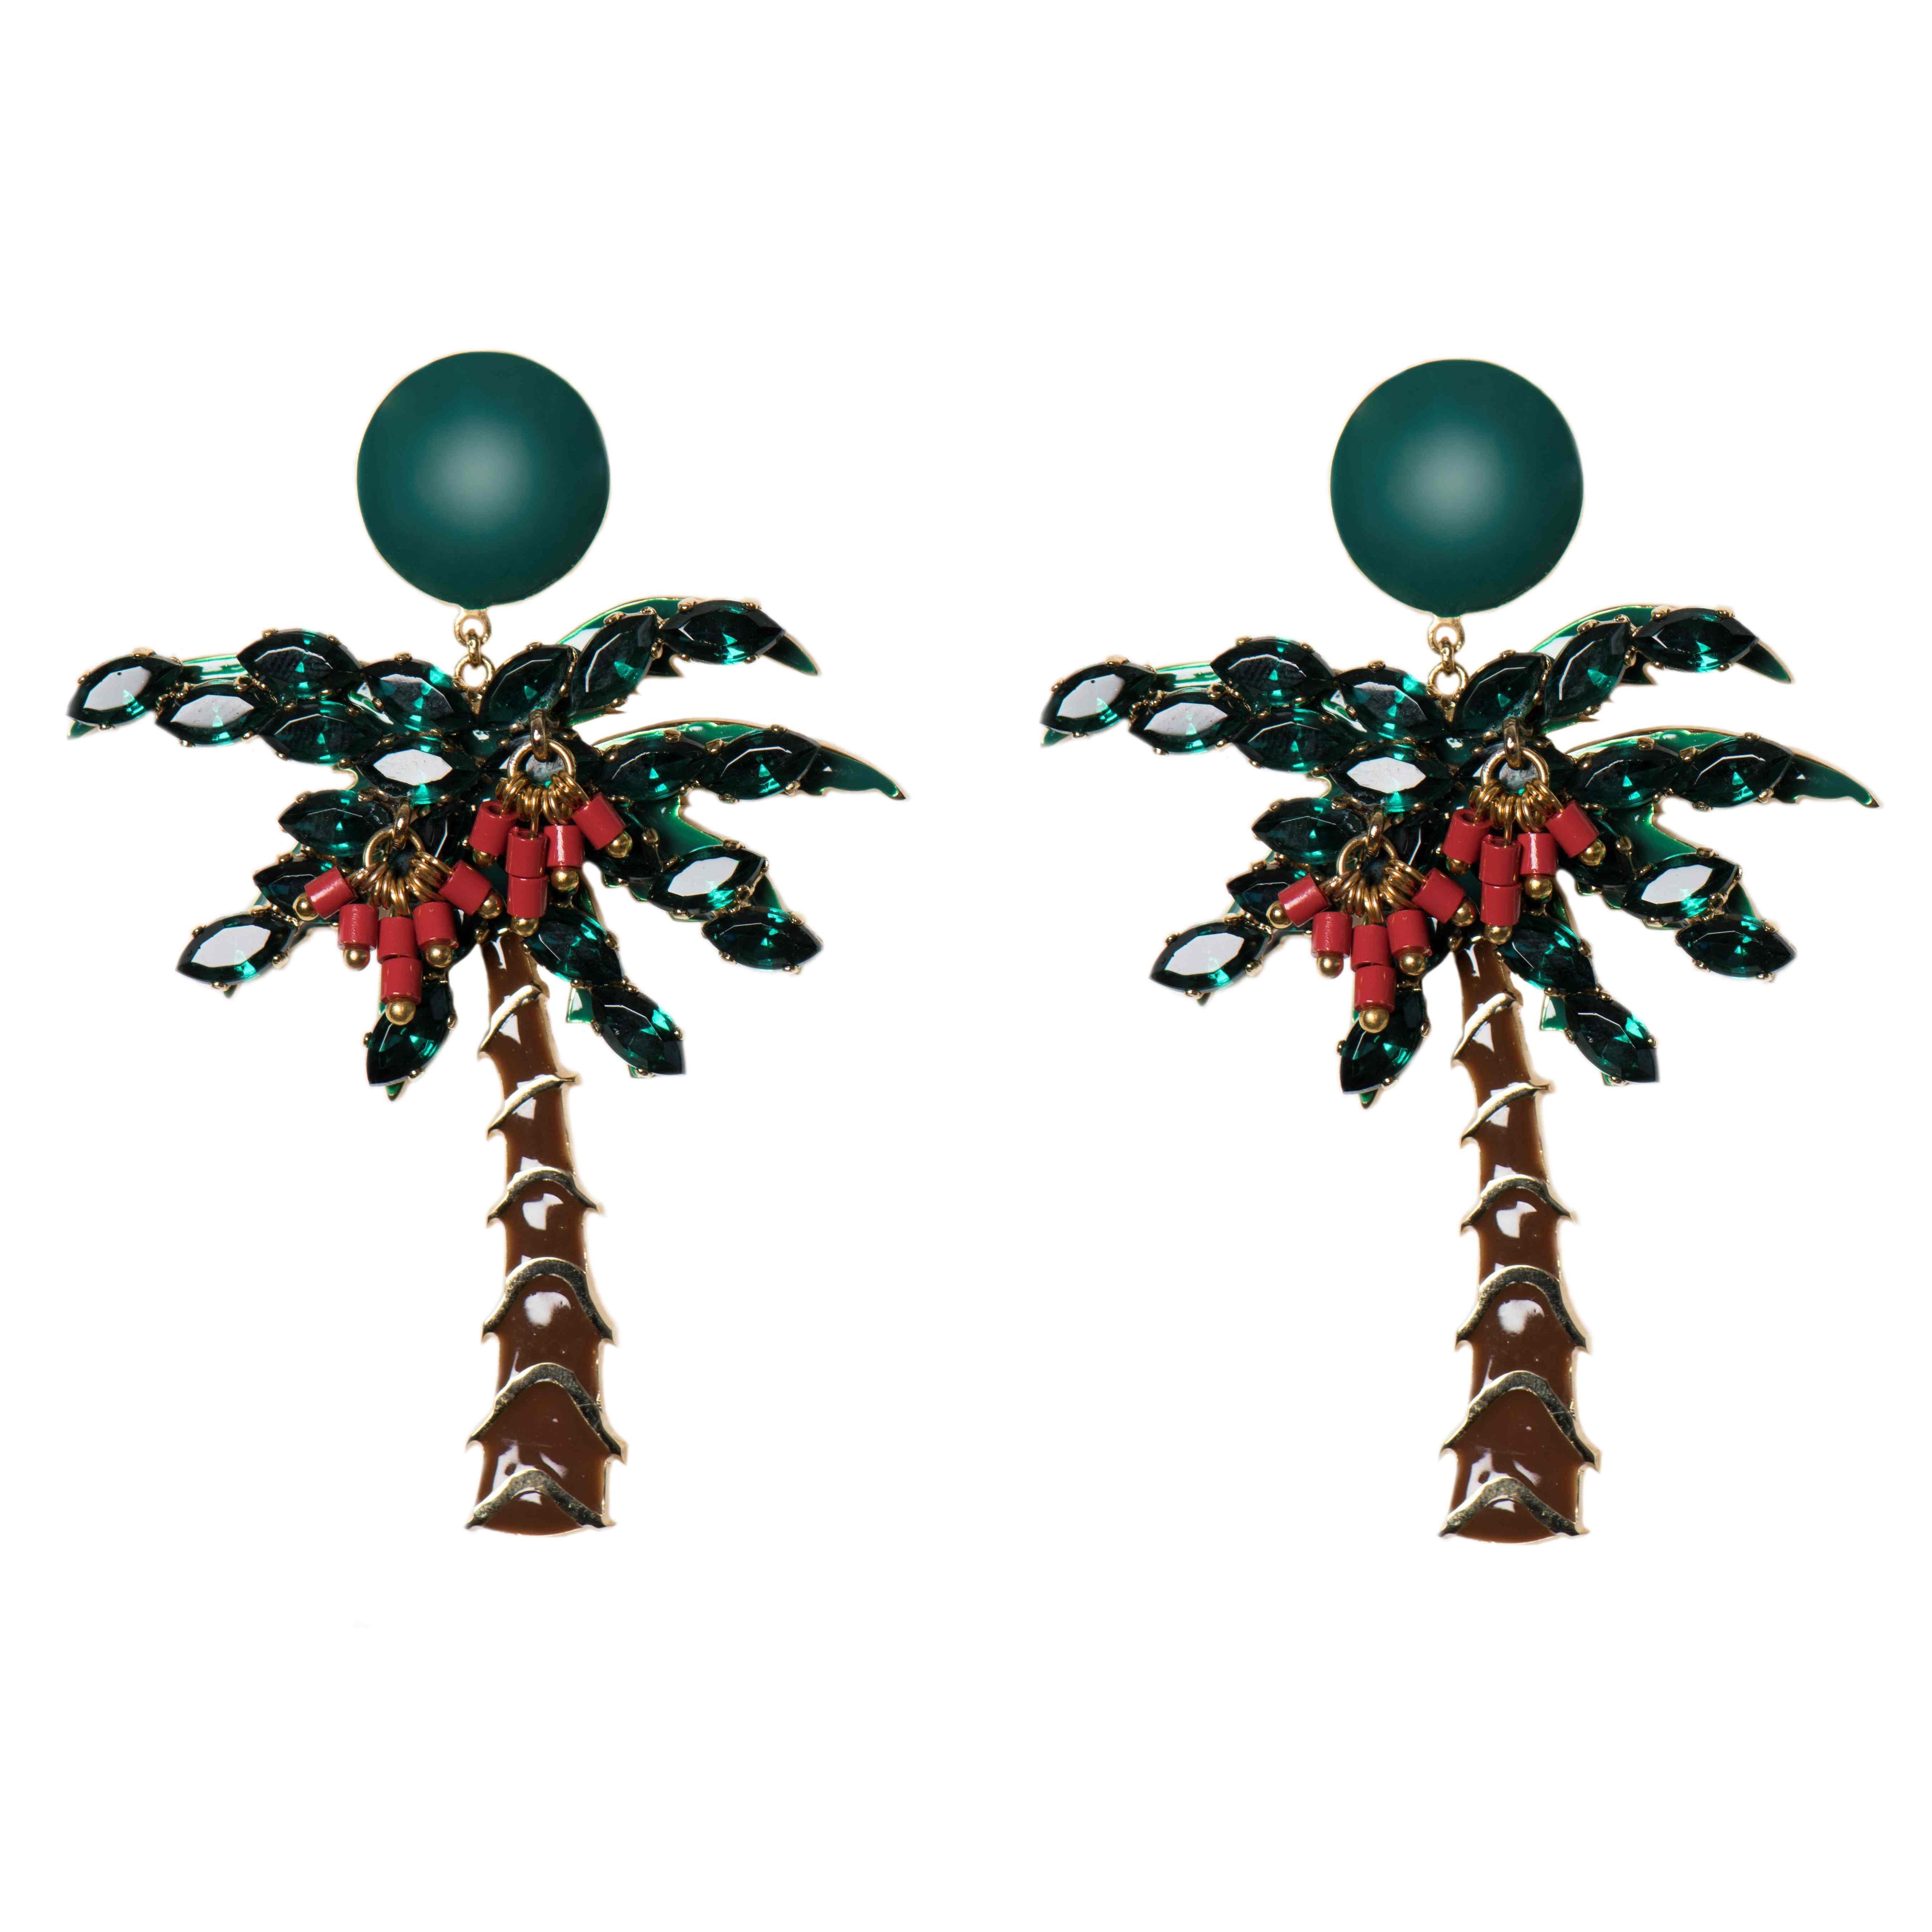 Palm Tree
Long Earrings